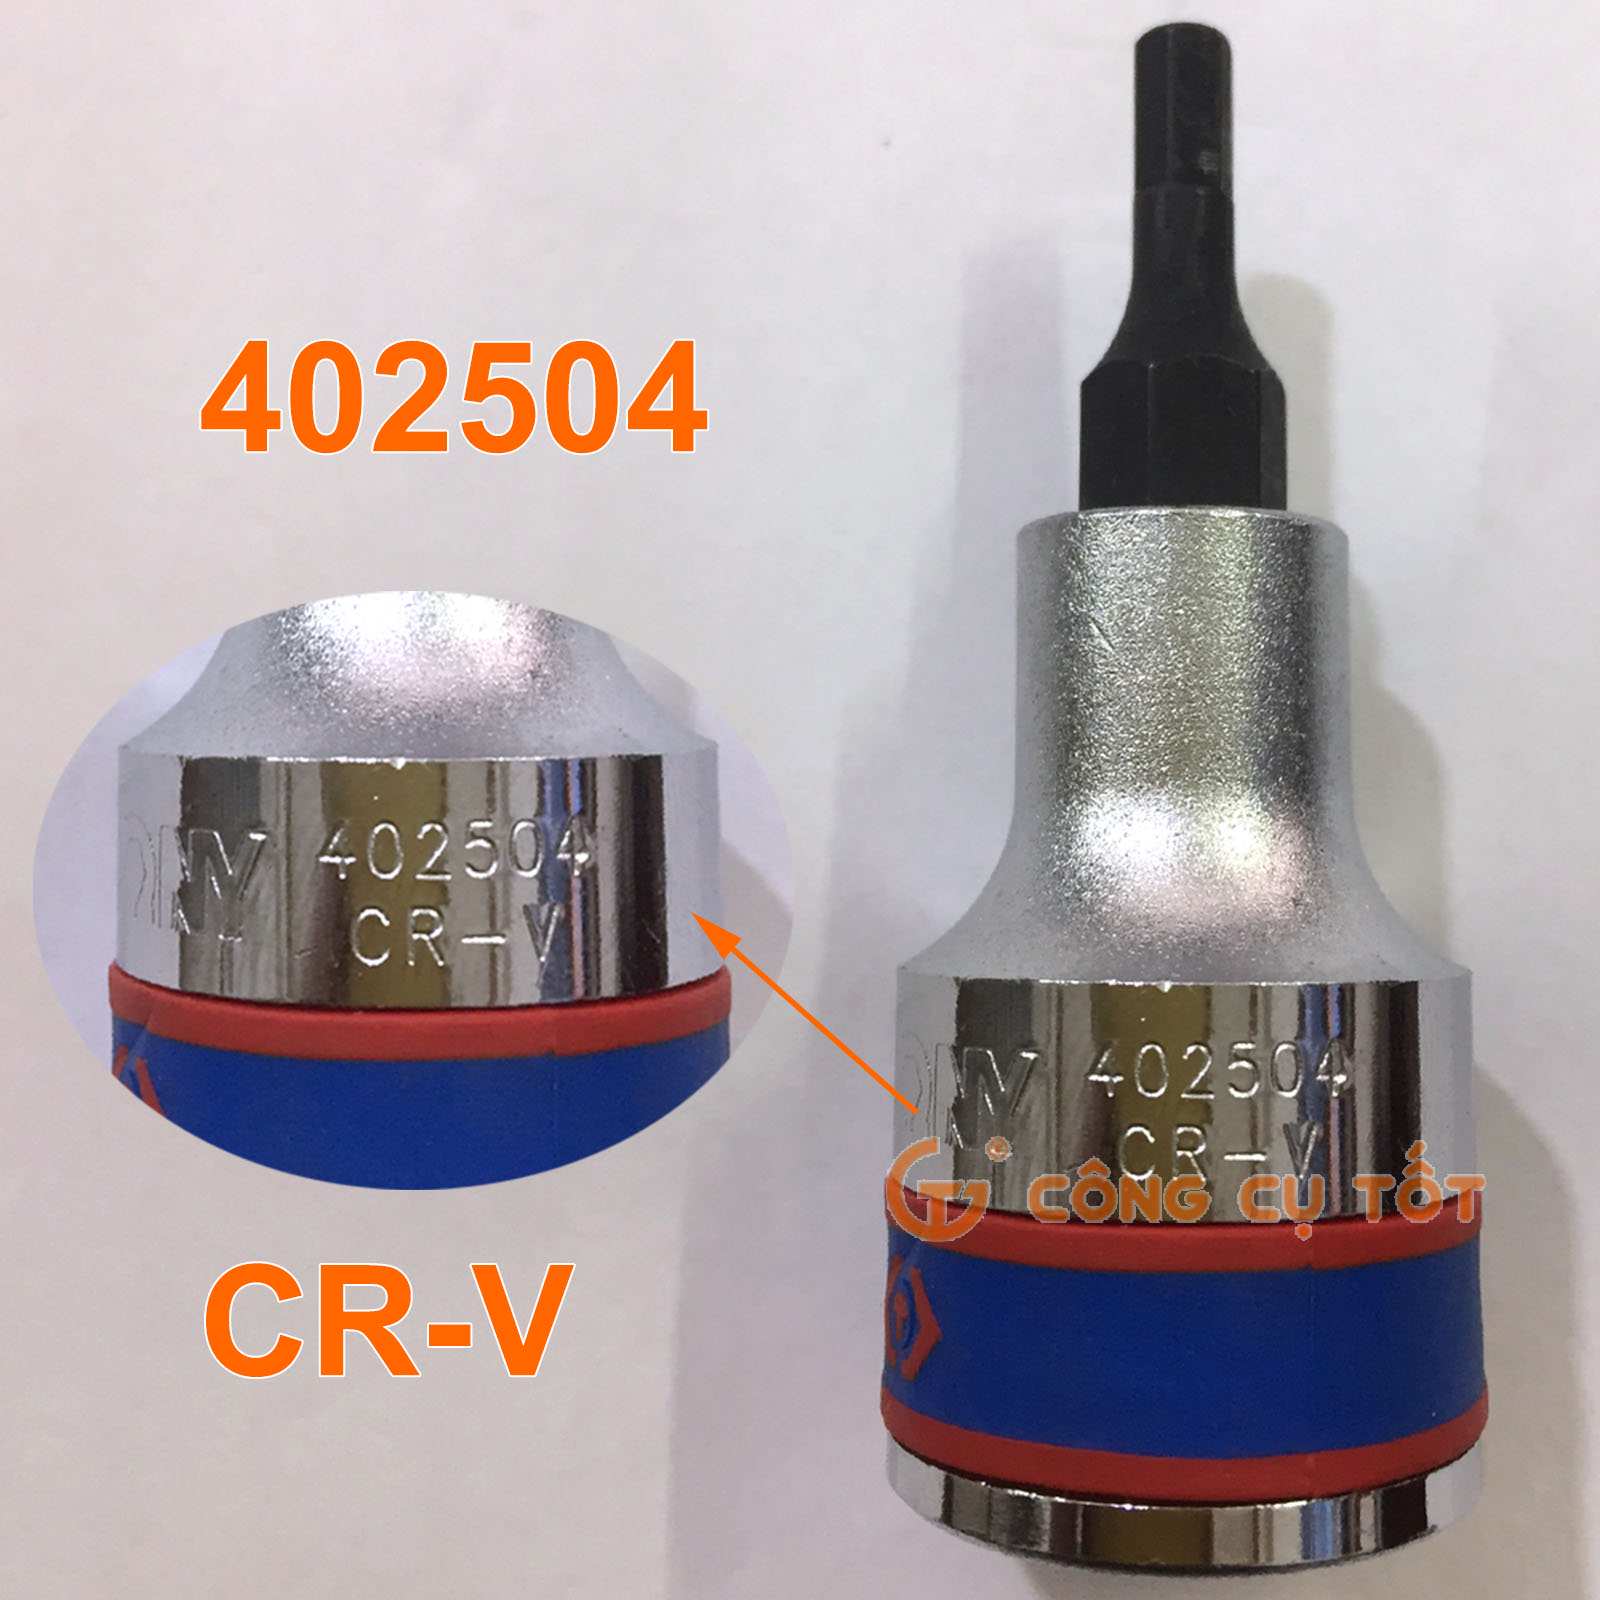 Chất liệu thếp CR-V được in nổi trên thân sản phẩm